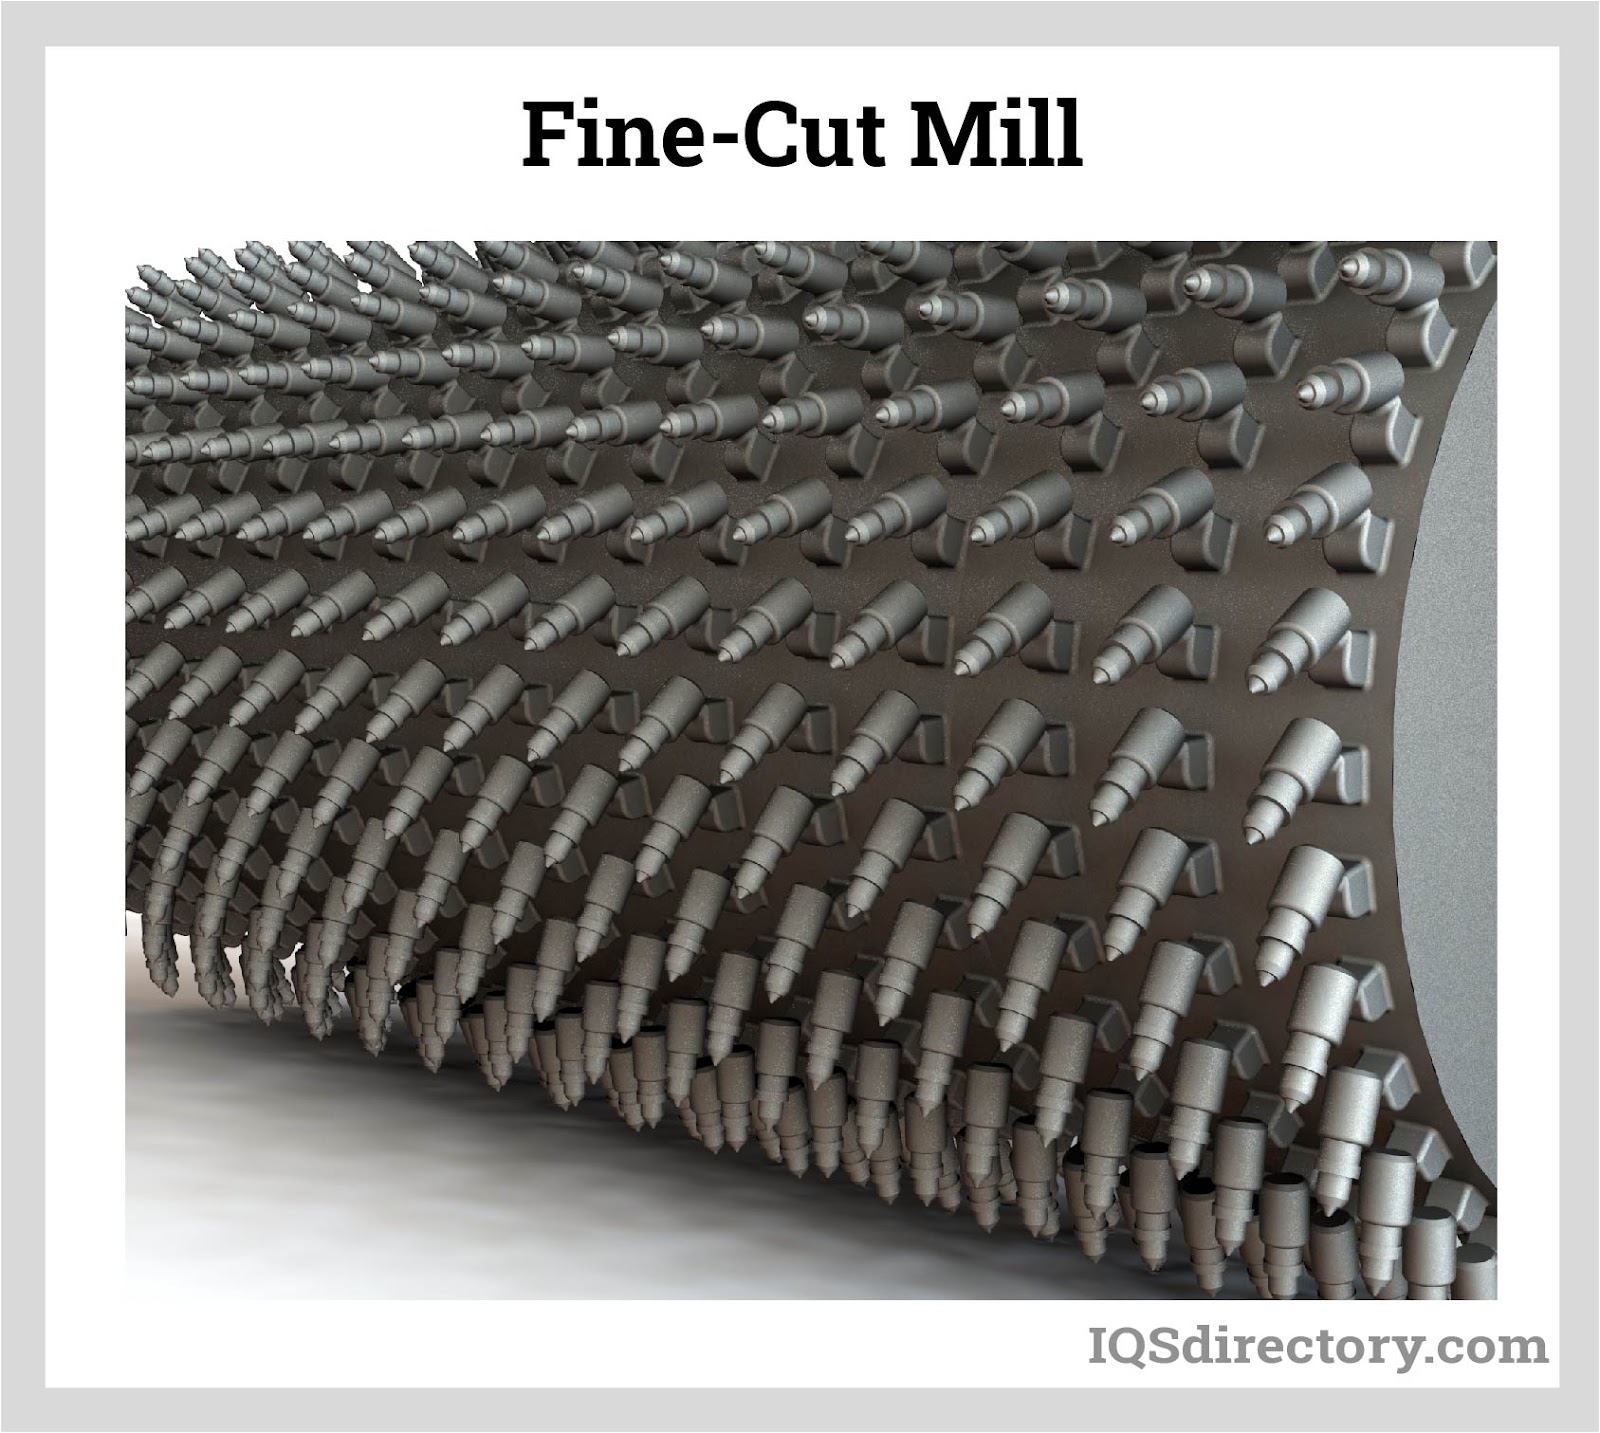  Fine-Cut Mill